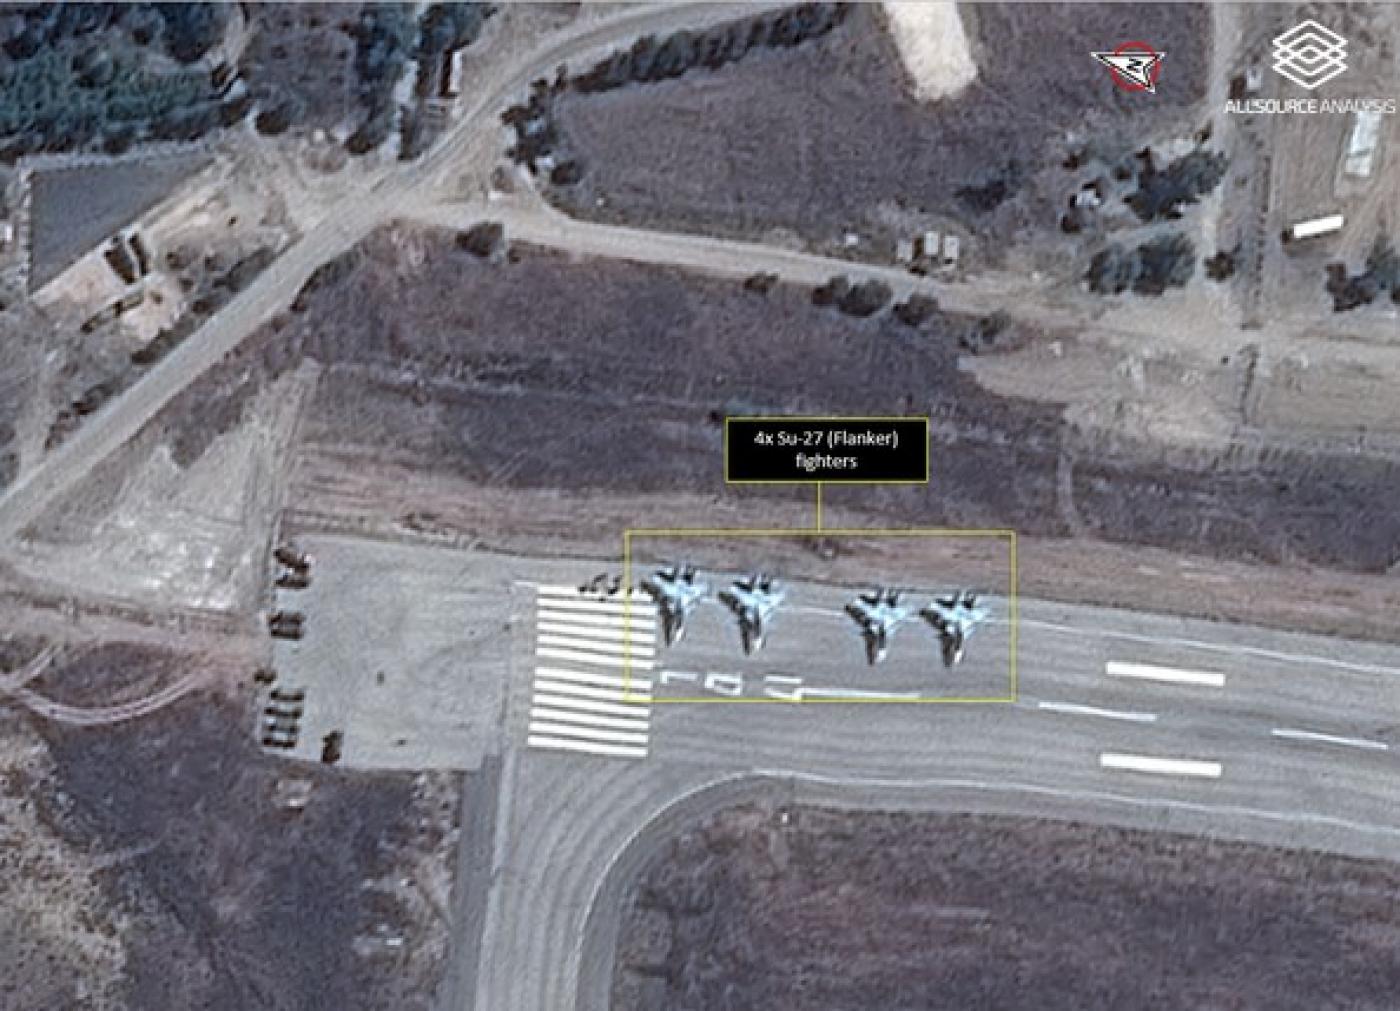 Συνάντηση ανώτατων στελεχών των υπηρεσιών ασφαλείας Συρίας-Ισραήλ στη ρωσική αεροπορική βάση Χμειμίμ στην Λαττάκεια